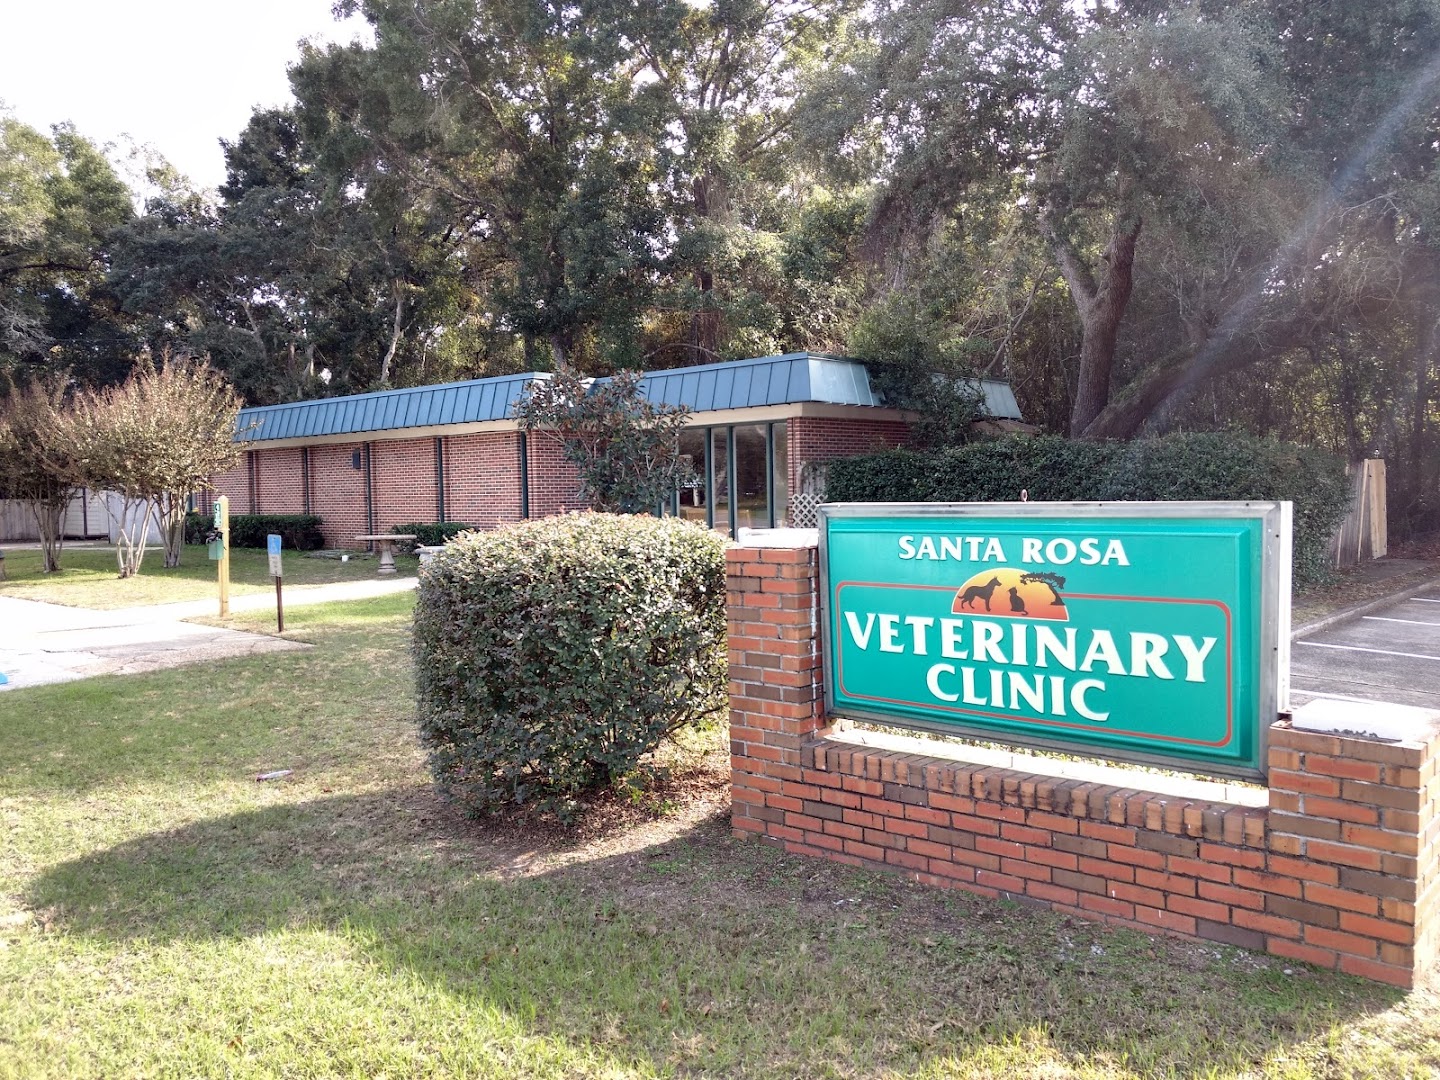 Santa Rosa Veterinary Clinic